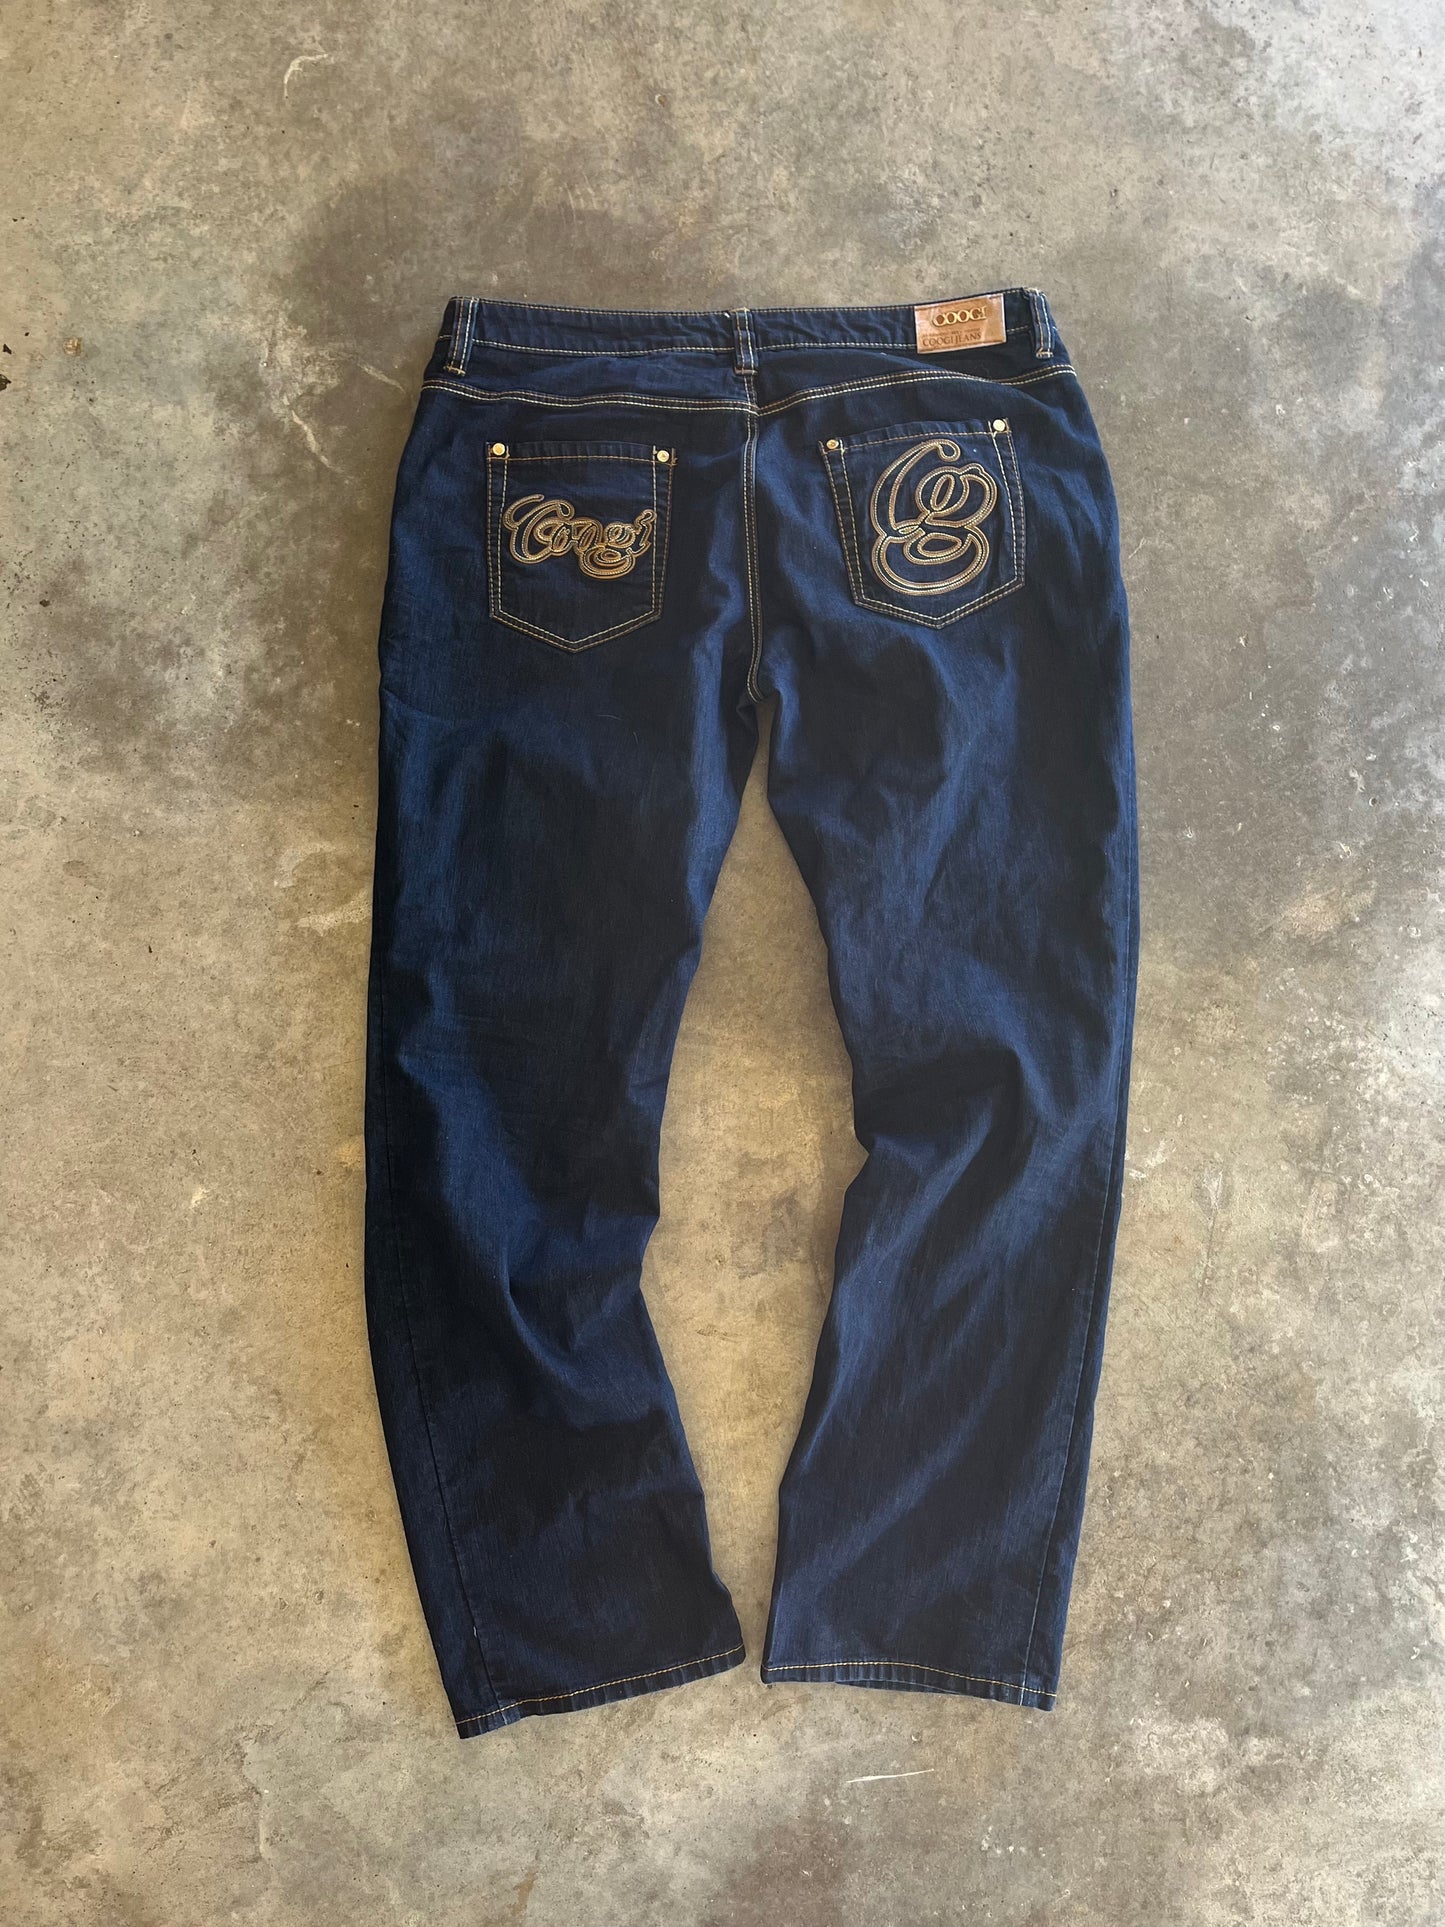 (17/18) Coogi Dark-Wash Denim Jeans